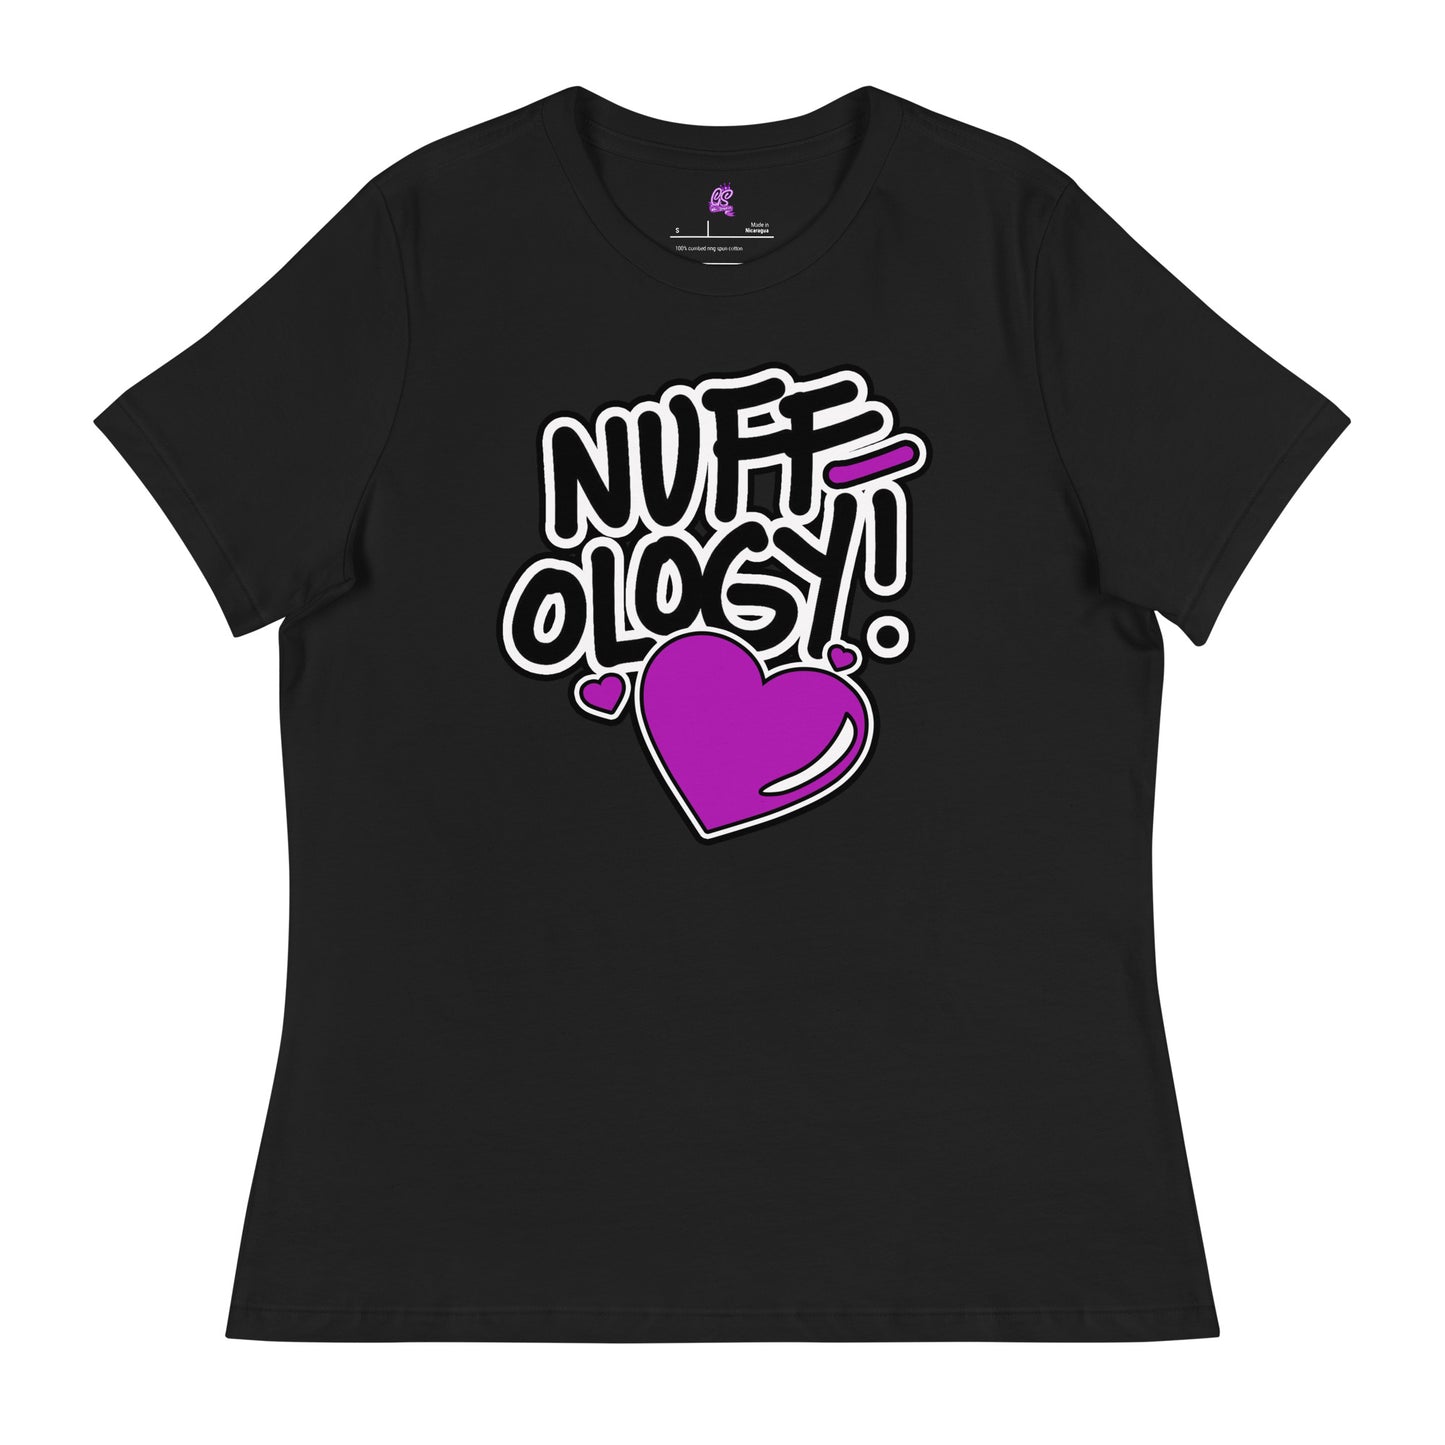 NUFFology - Women's Relaxed T-Shirt